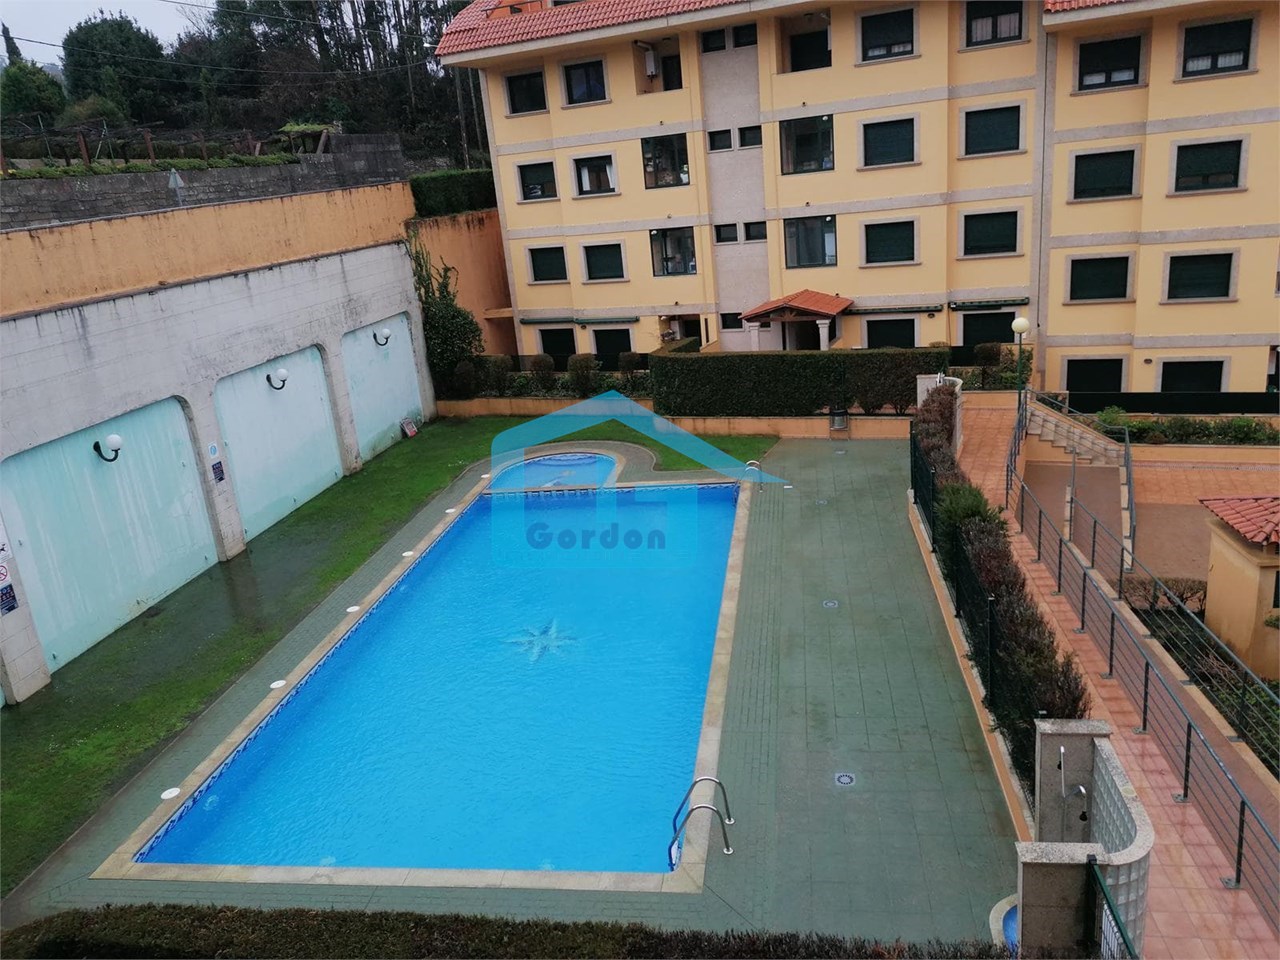 Foto 3 Sanxenxo: A7157: Piso con terraza en Residencial Miraflores, urbanizacion con piscina comunitaria...